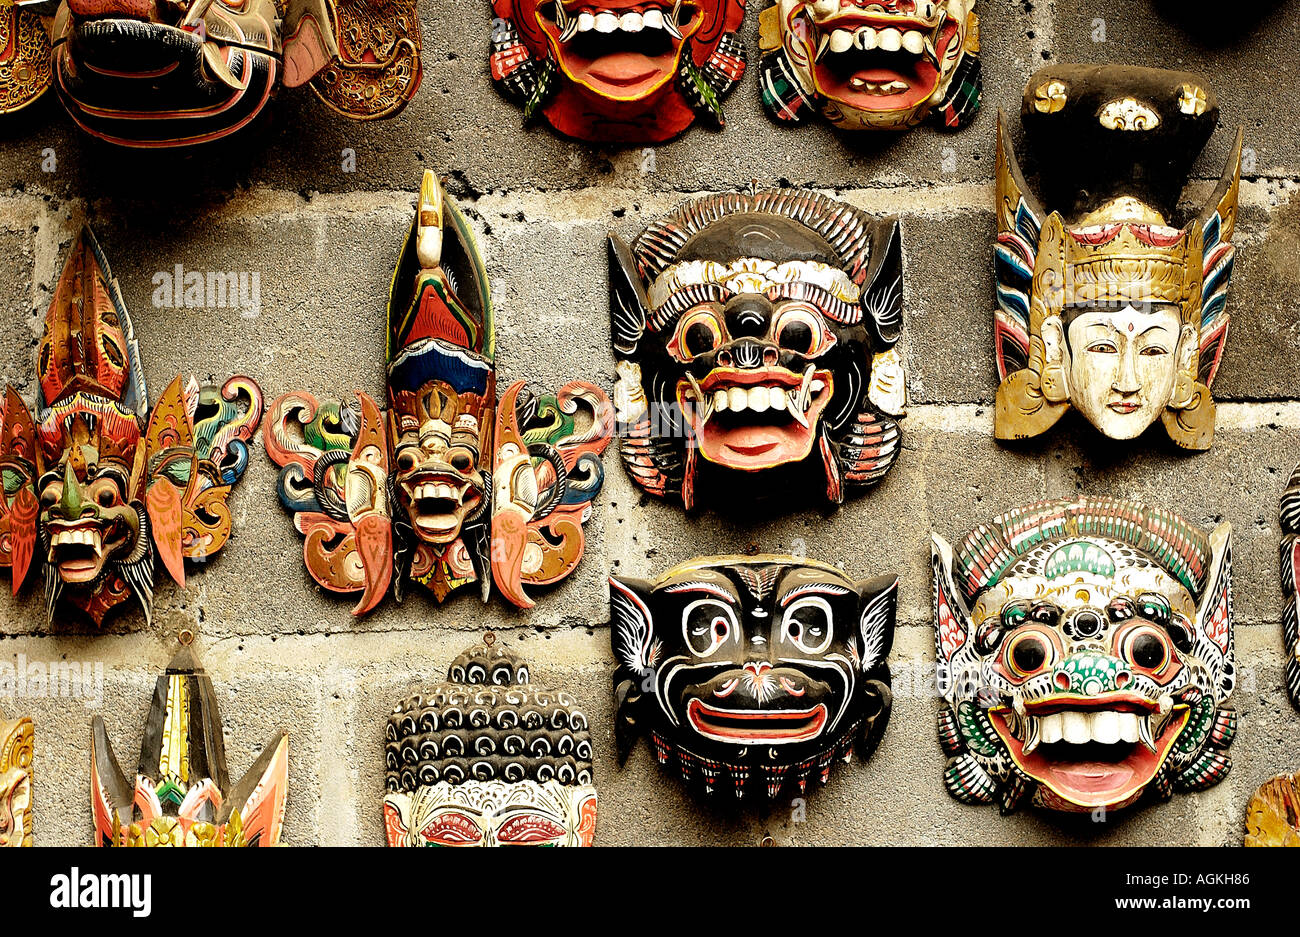 Balinesische Barong-Maske auf der Insel Bali in Indonesien Südost-Asien  Stockfotografie - Alamy